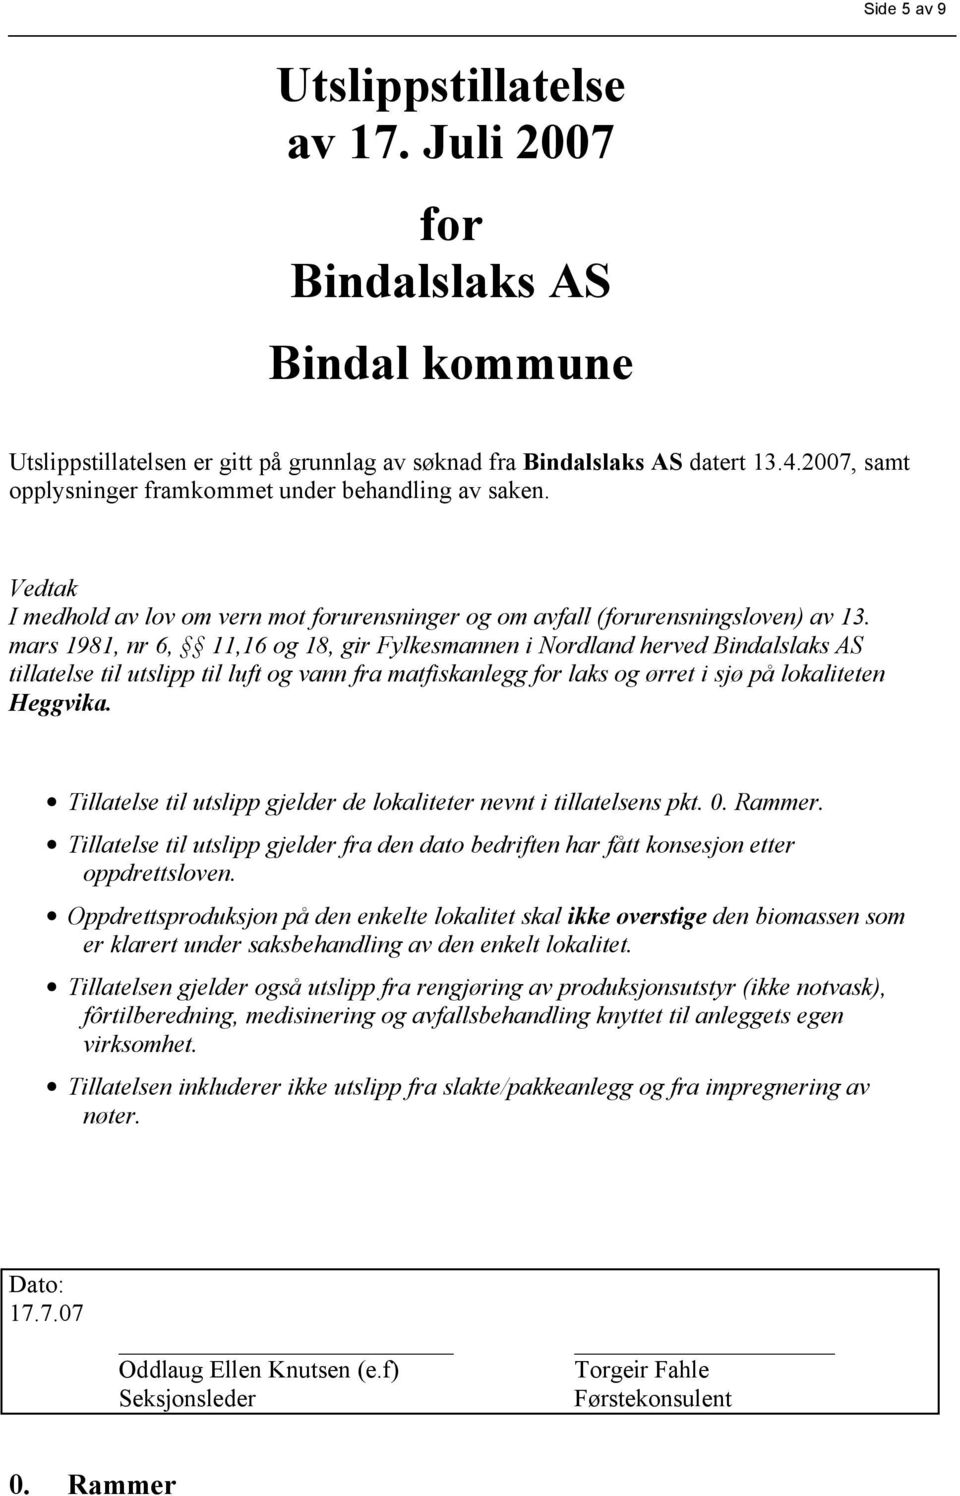 mars 1981, nr 6, 11,16 og 18, gir Fylkesmannen i Nordland herved Bindalslaks AS tillatelse til utslipp til luft og vann fra matfiskanlegg for laks og ørret i sjø på lokaliteten Heggvika.